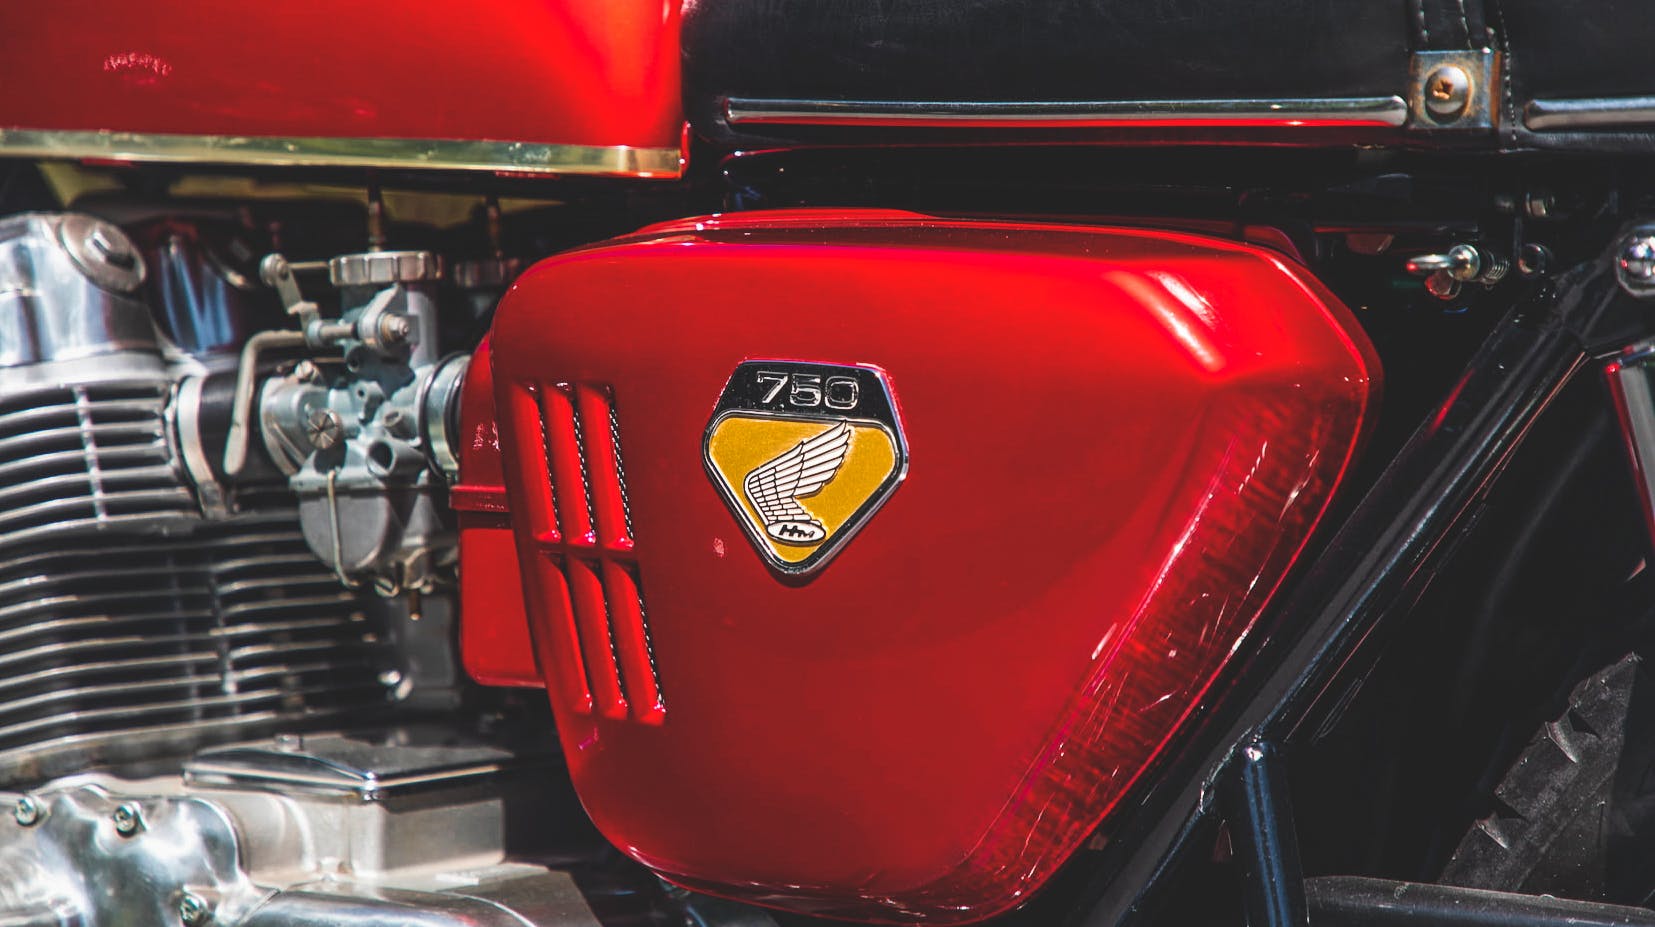 Honda vintage motorcycle badge